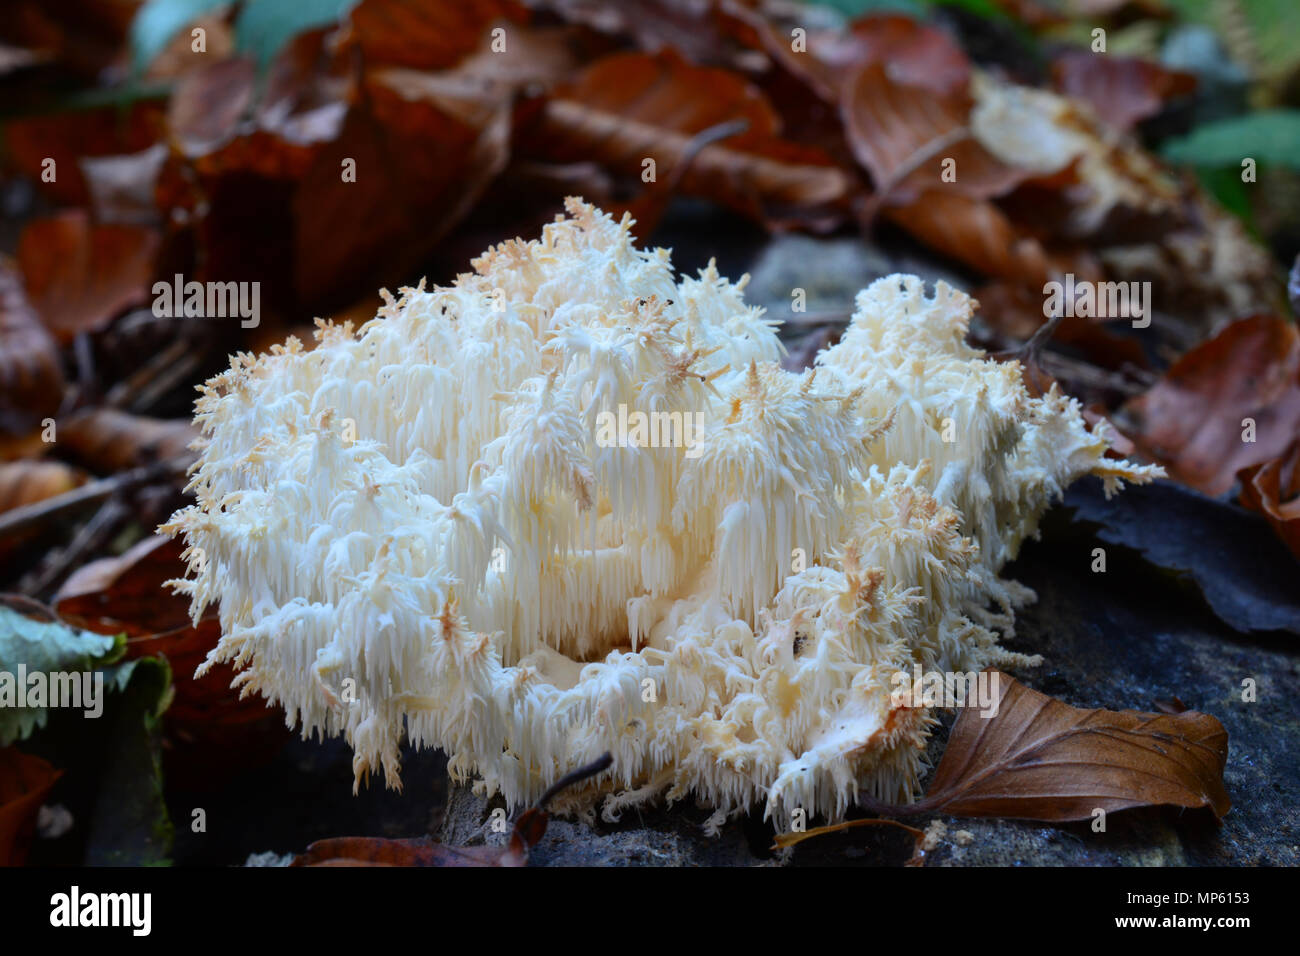 Hericium coralloides oder Ästiger Stachelbart Pilz im natürlichen Lebensraum, einem alten verrotteten Log in gemischten Bergwald Stockfoto